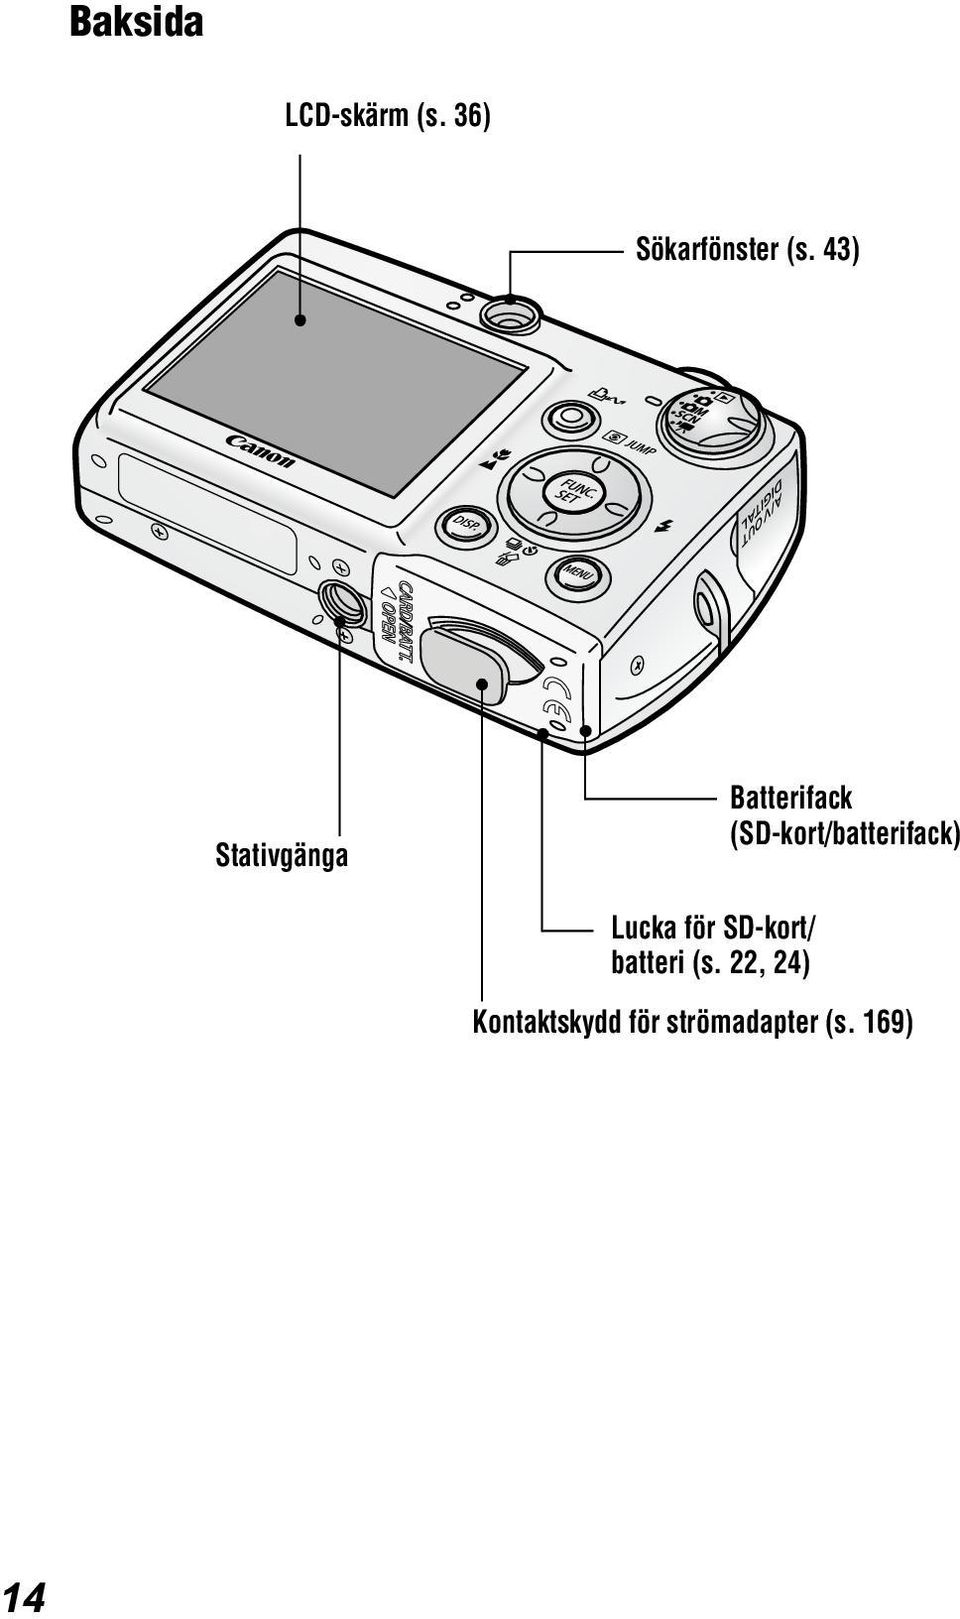 (SD-kort/batterifack) Lucka för SD-kort/